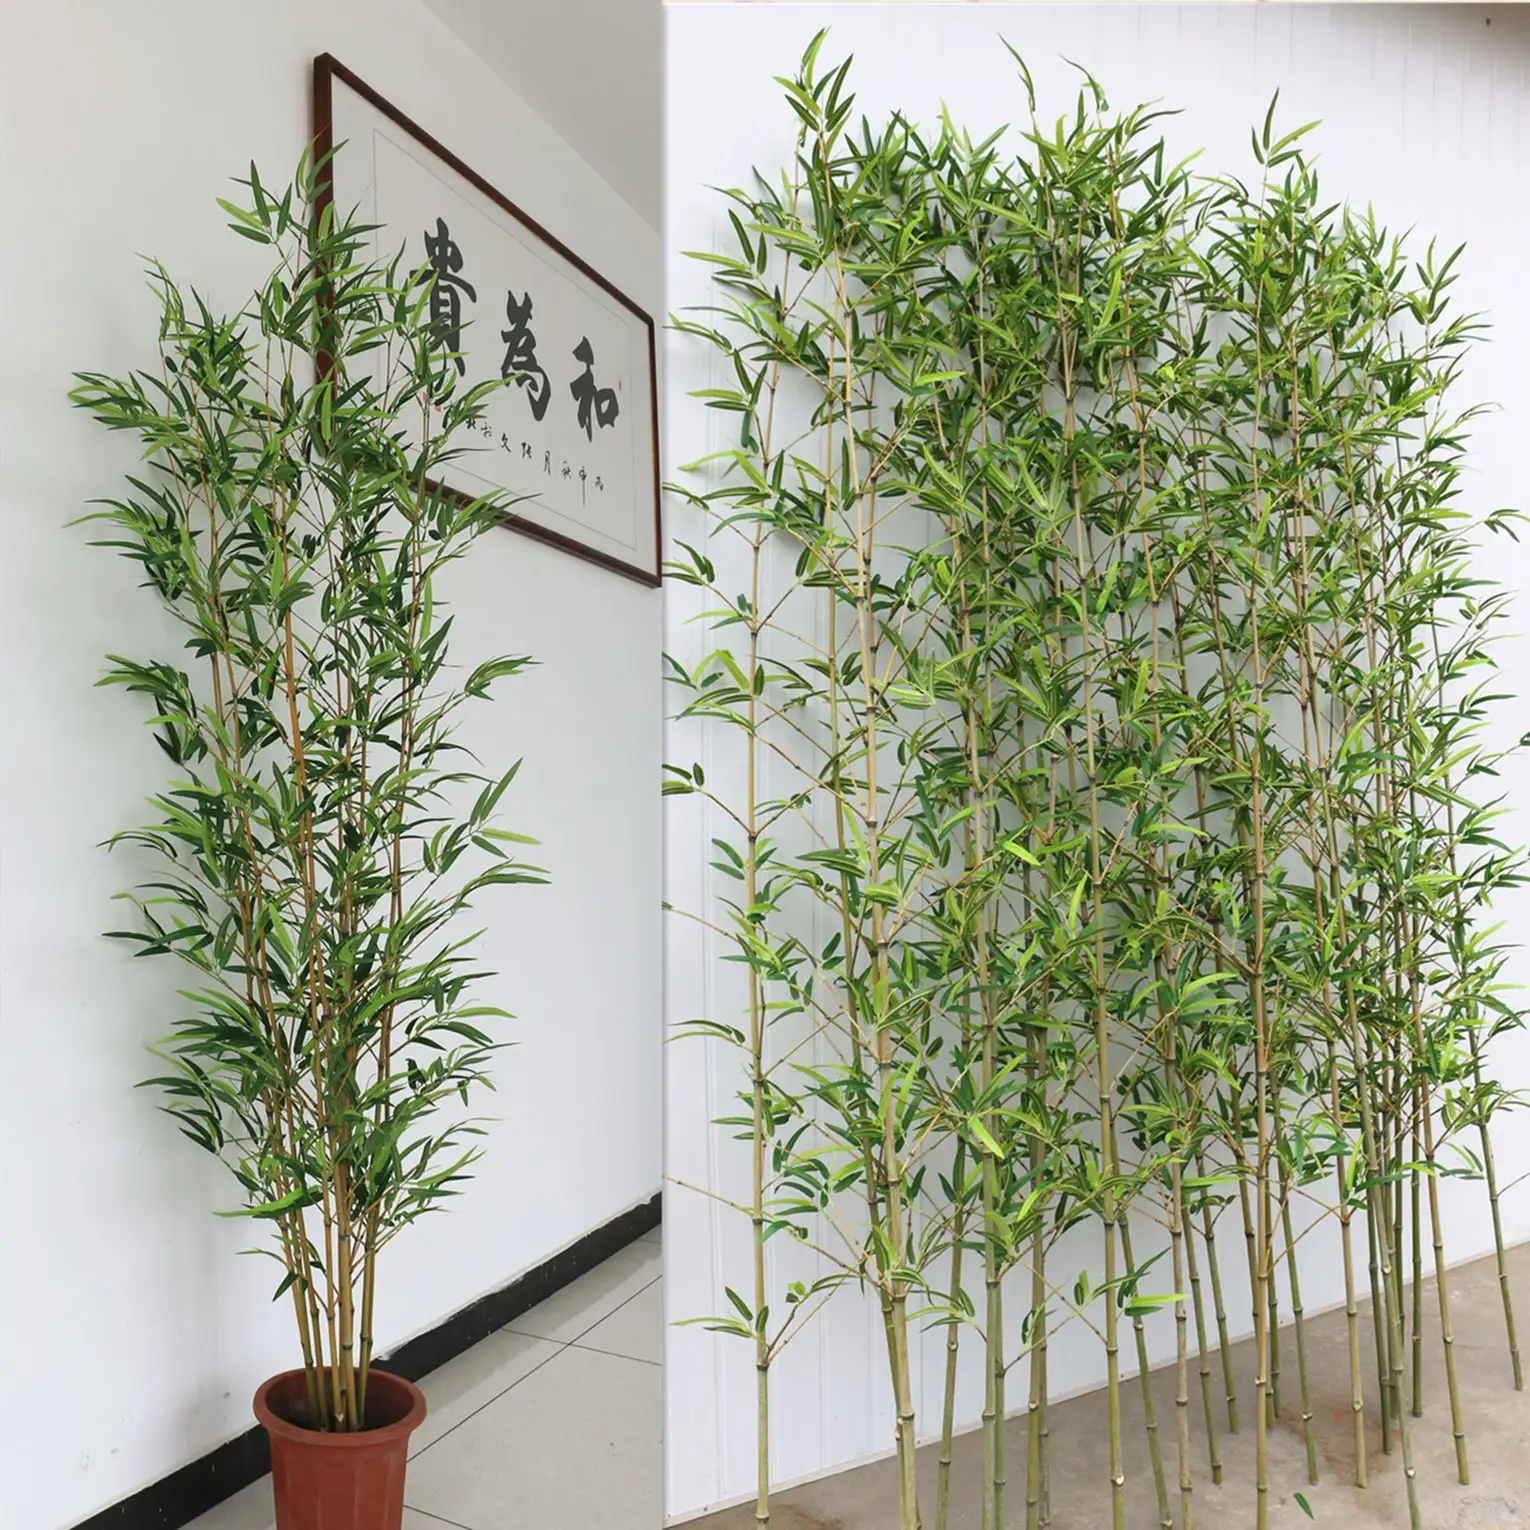 人工竹の木L-BT卸売シルク偽竹植物生け垣偽植物スクリーンプライバシーガーデンフェンス屋外家の装飾